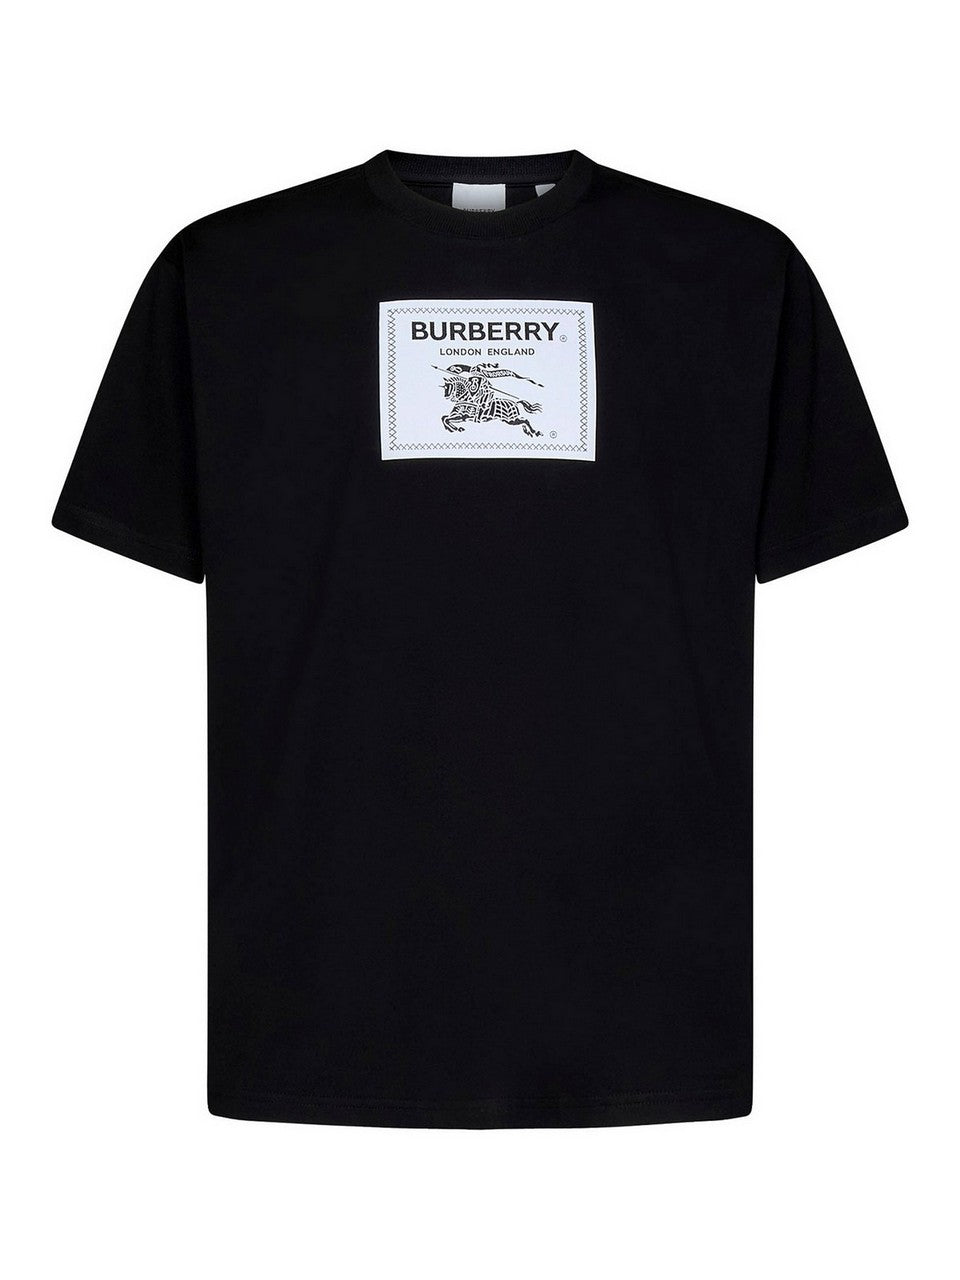 T-Shirt Burberry 80651871005 in cotone con etichetta-logo